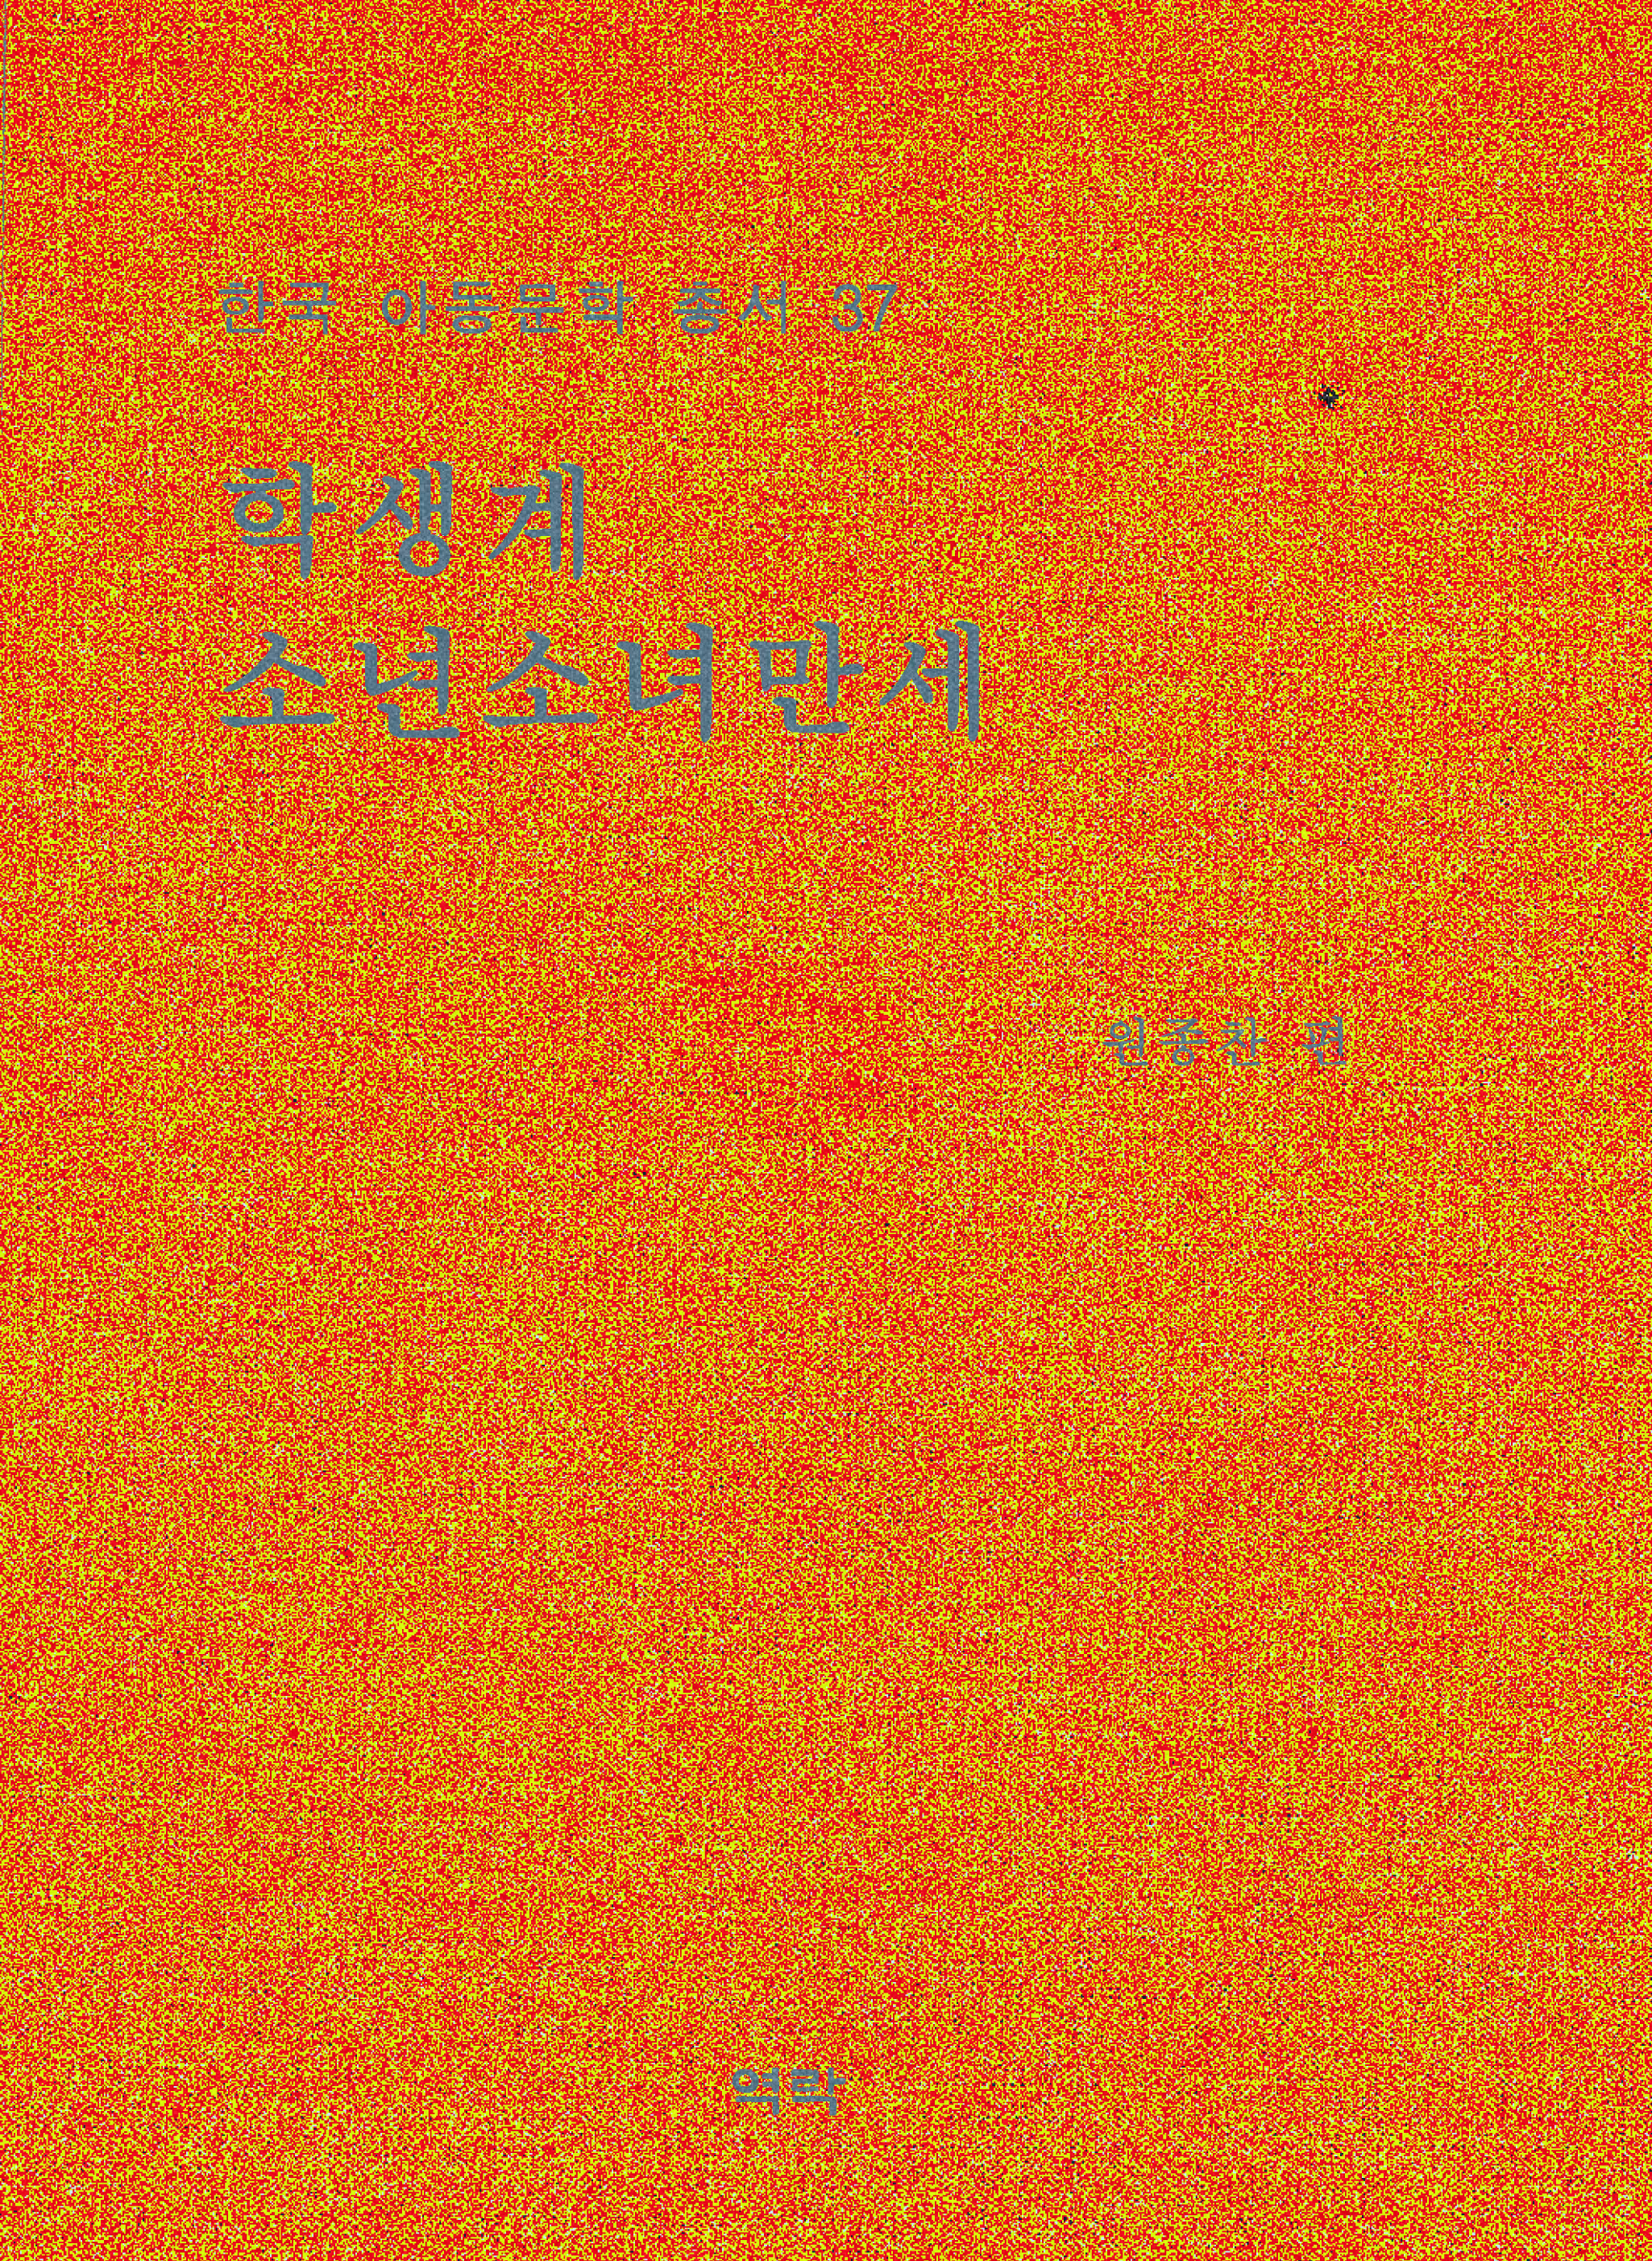 한국아동문학총서 37권